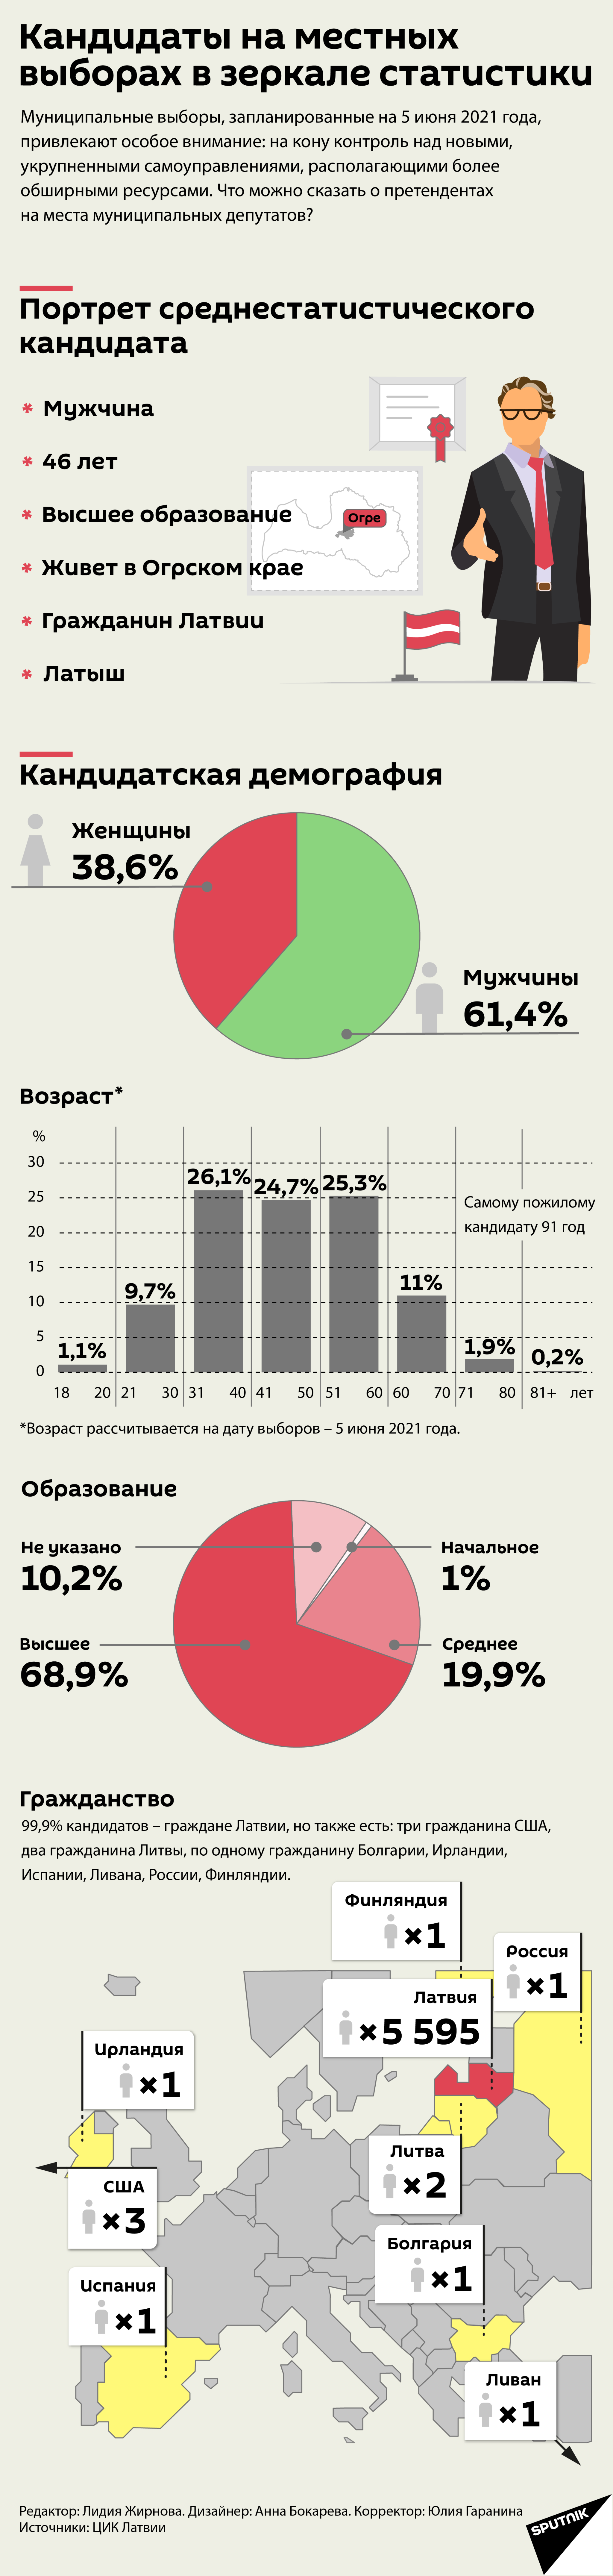 Кандидаты на местных выборах в зеркале статистики - Sputnik Латвия, 1920, 09.04.2021